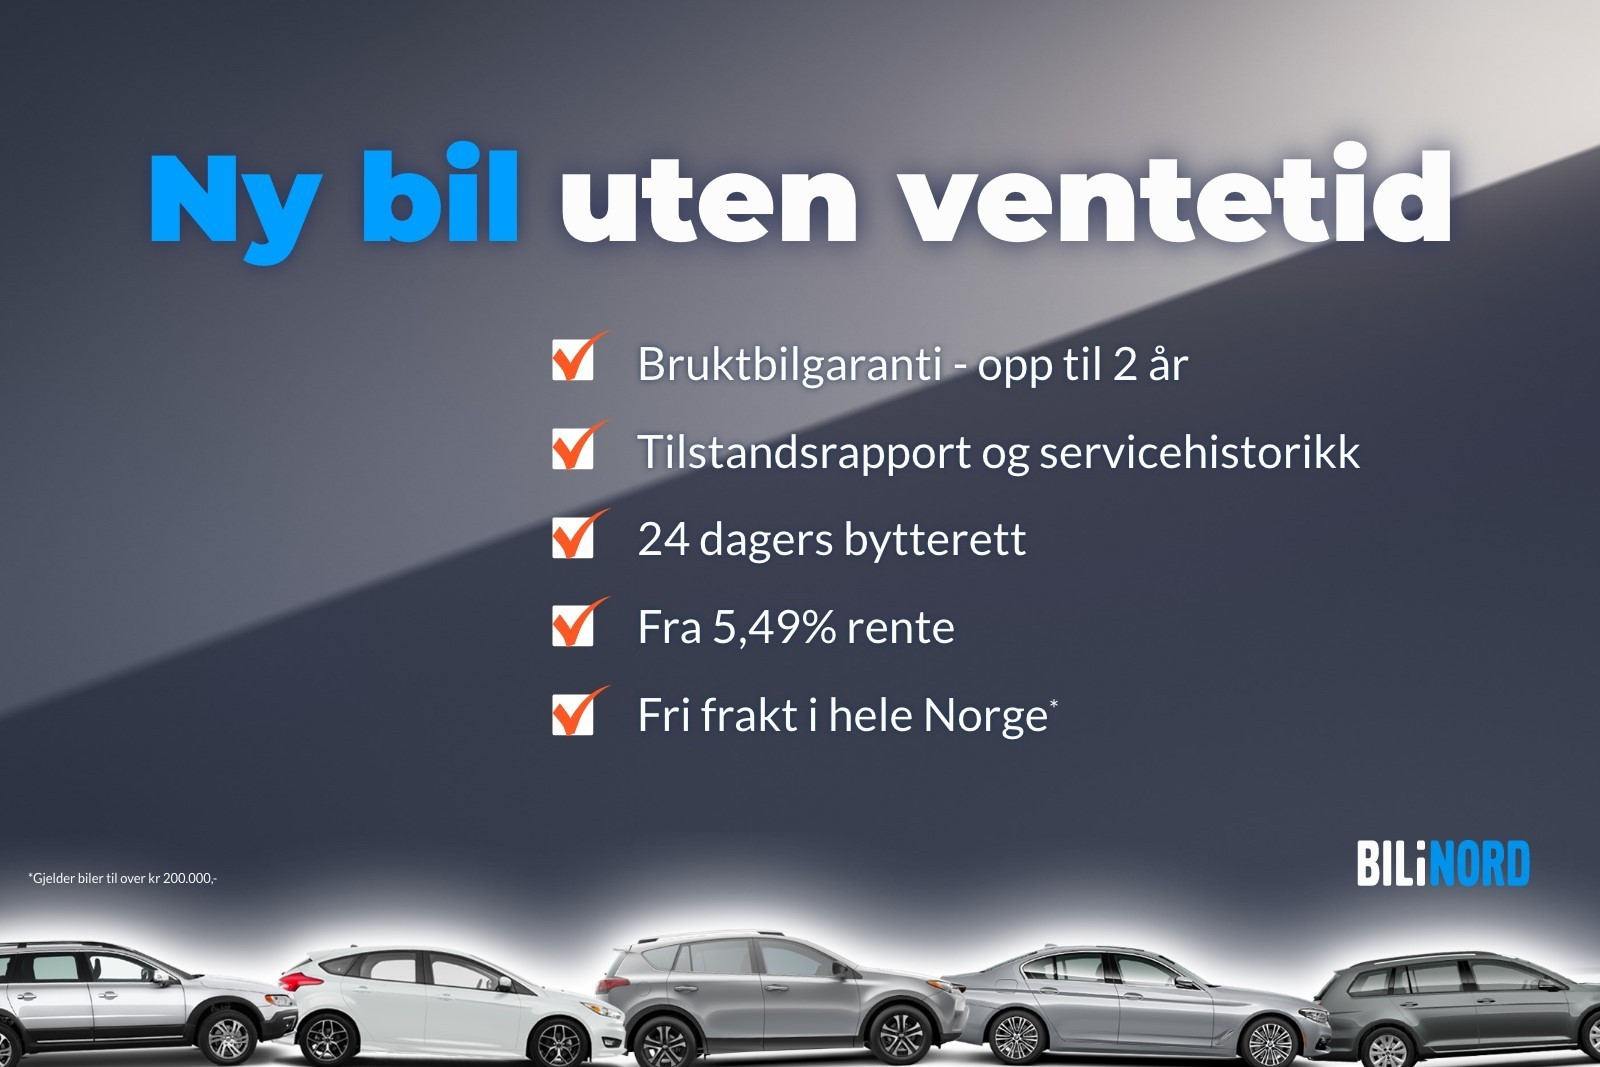 Ta kontakt med Øyvind på tlf 458 34 077 for mer informasjon. Vi leverer bilen kostnadsfritt!!